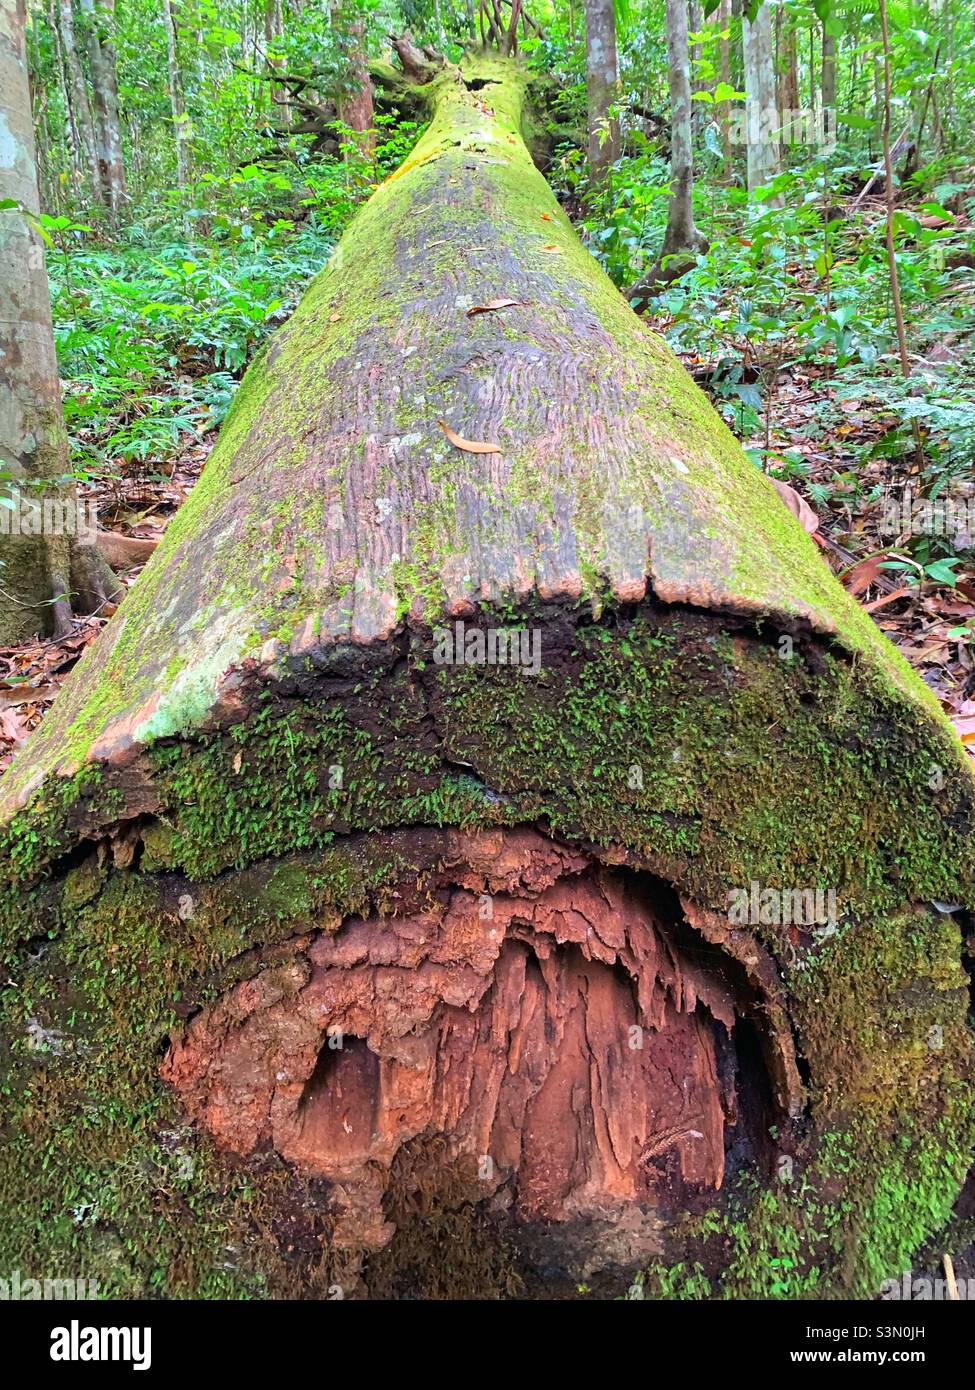 A huge fallen tree in an Australian rainforest Stock Photo